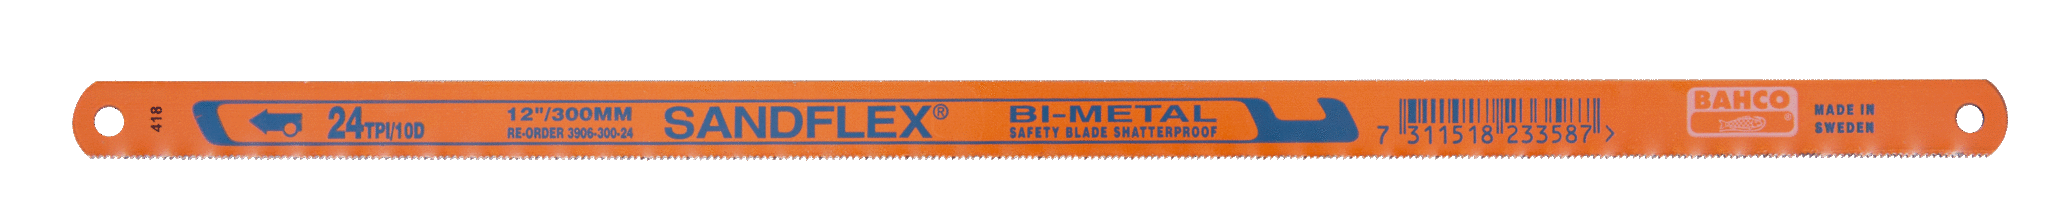 Биметаллические ножовочные полотна SANDFLEX®. Новое биметаллическое полотно SANDFLEX с повышеным содержанием кoбальта BAHCO 3906-300-32-5P